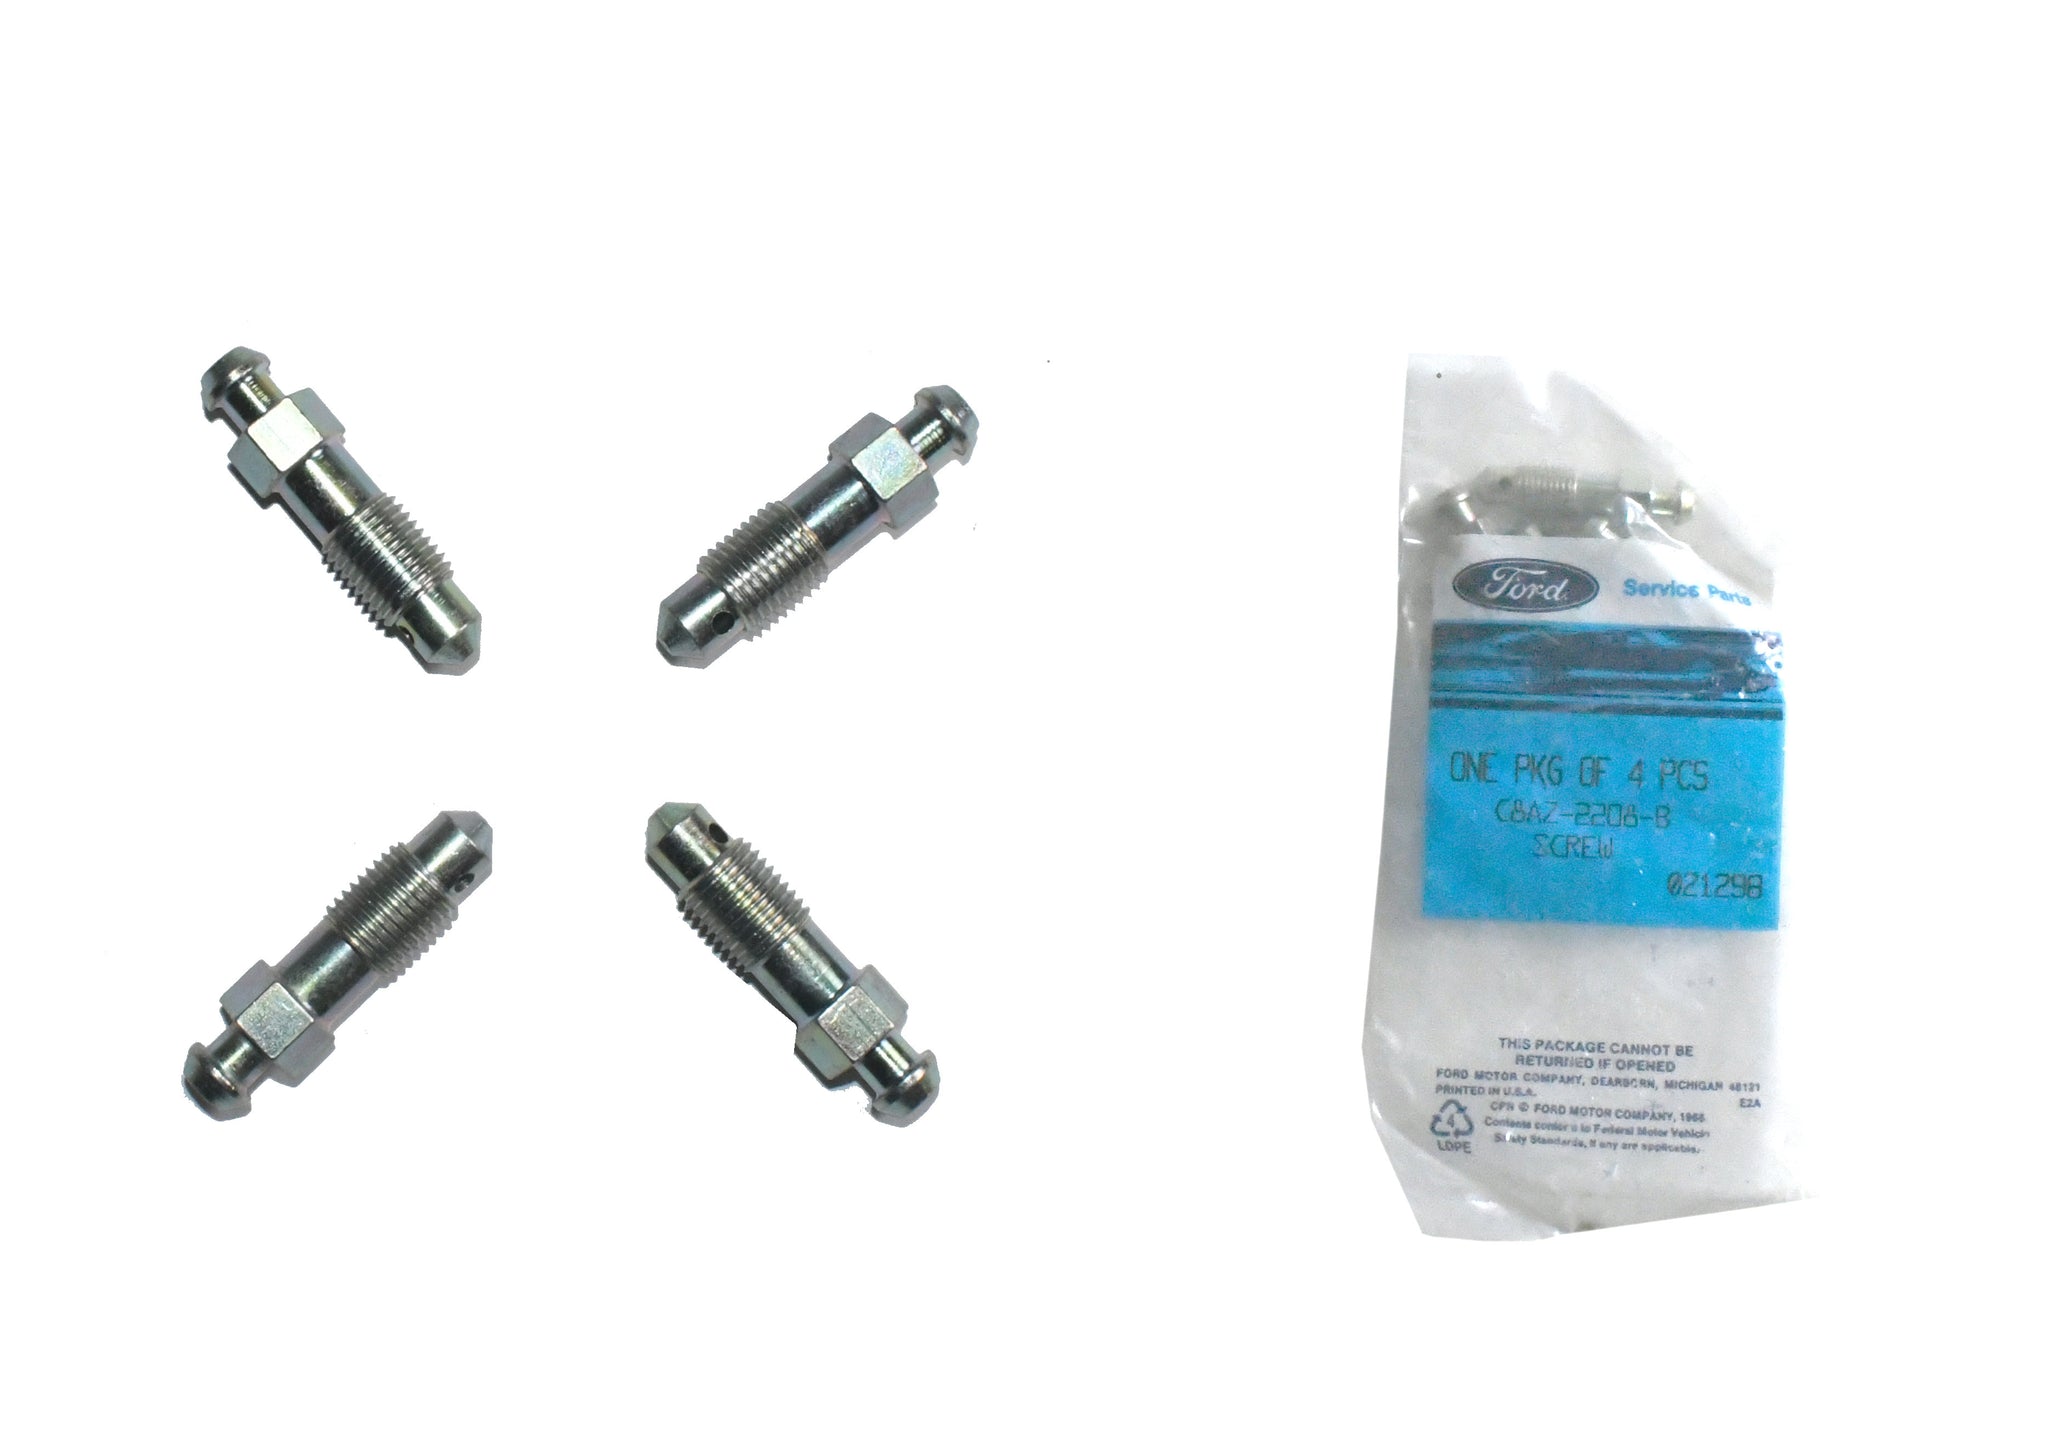 New brake bleeder screw set of 4 for select Ford, Lincoln & Mazda C8AZ-2208-B